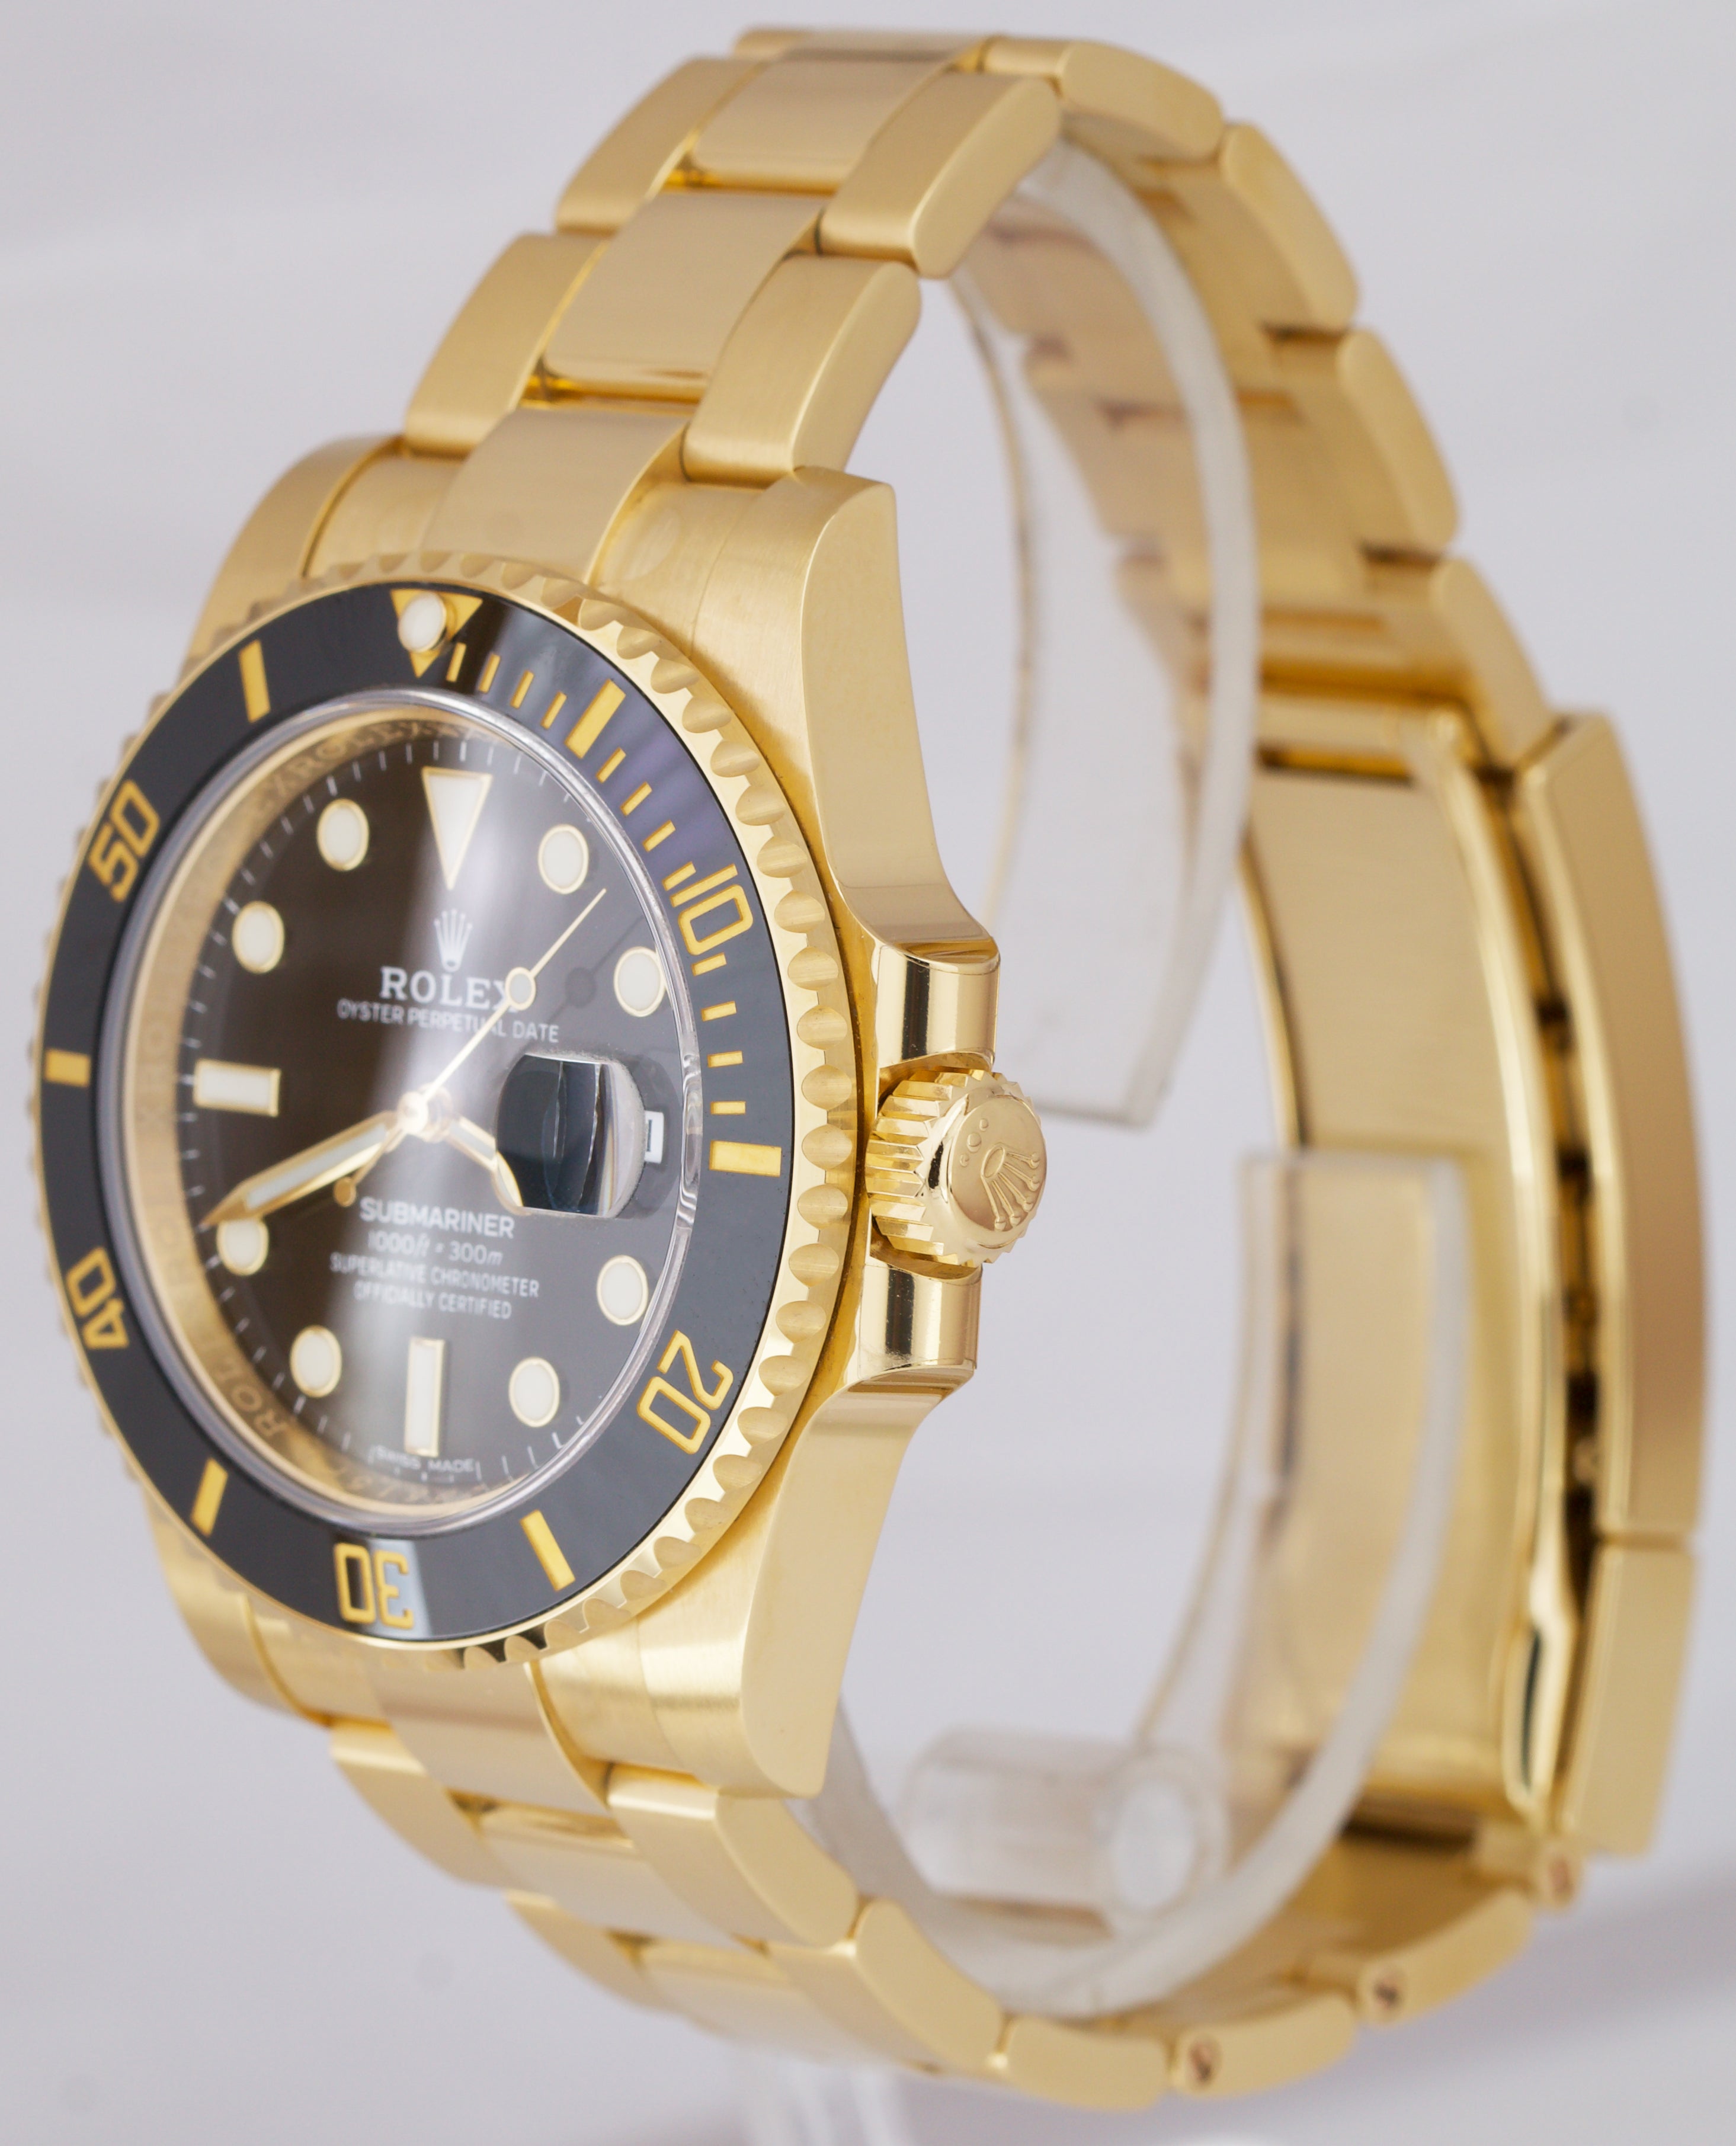 NEW 2020 STICKERED Rolex Submariner 18K Yellow Gold Black 40mm Watch 116618 LN